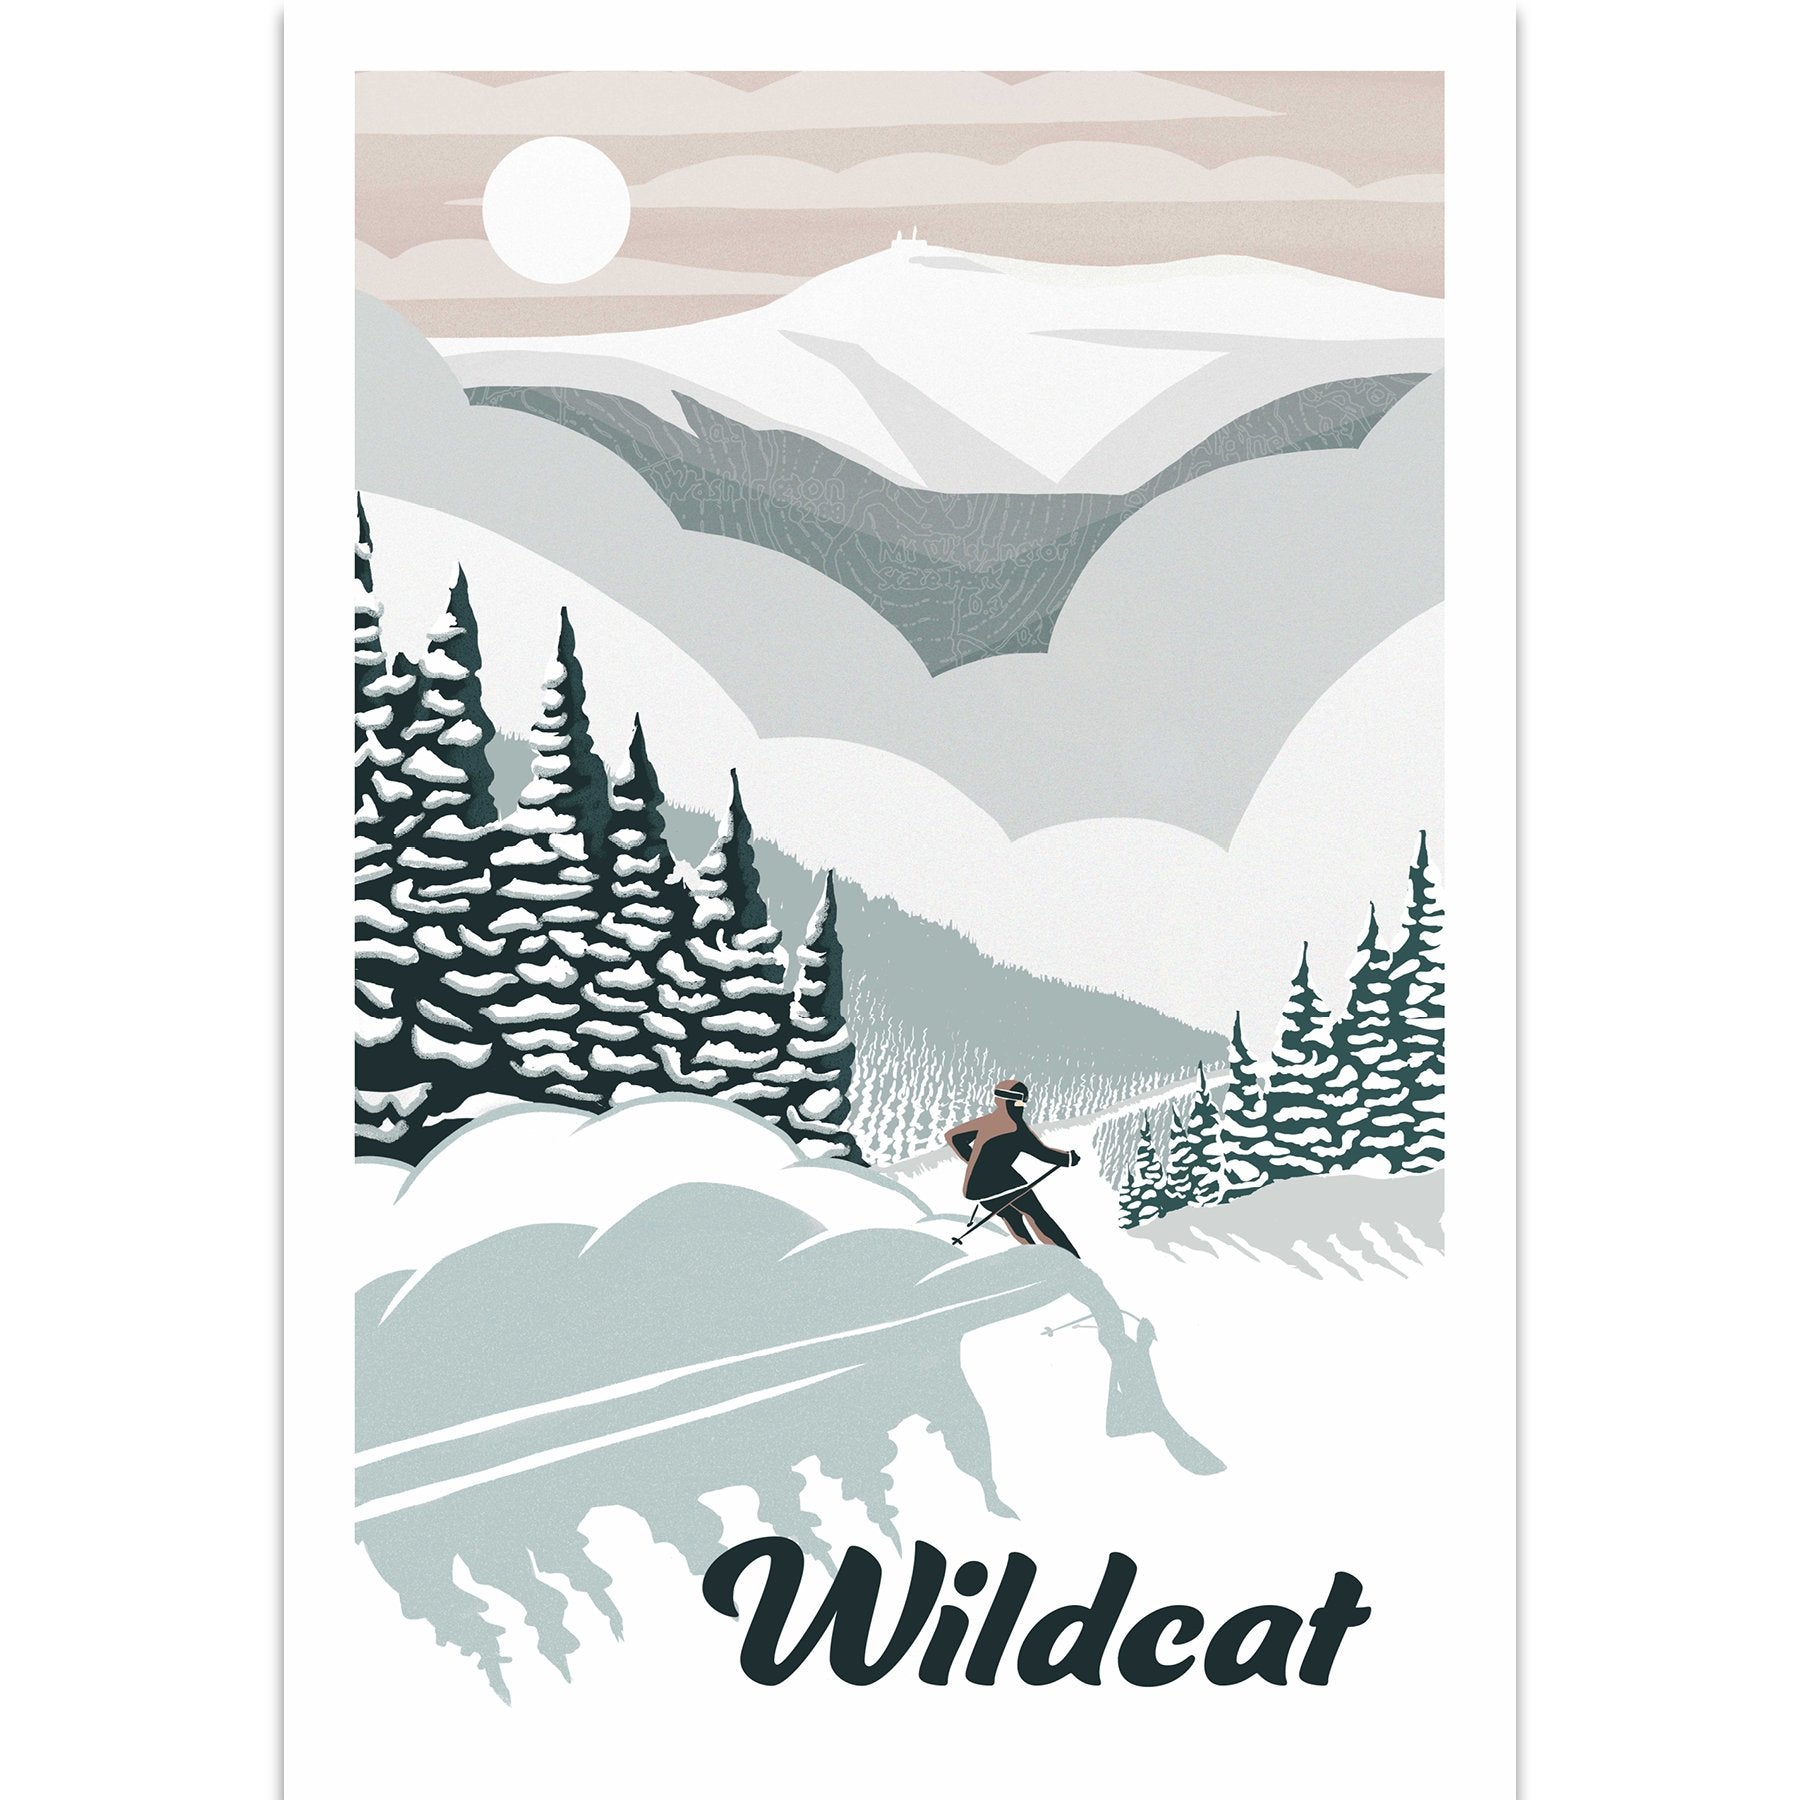 Wildcat Art Print 12x18 - Kat Maus Haus